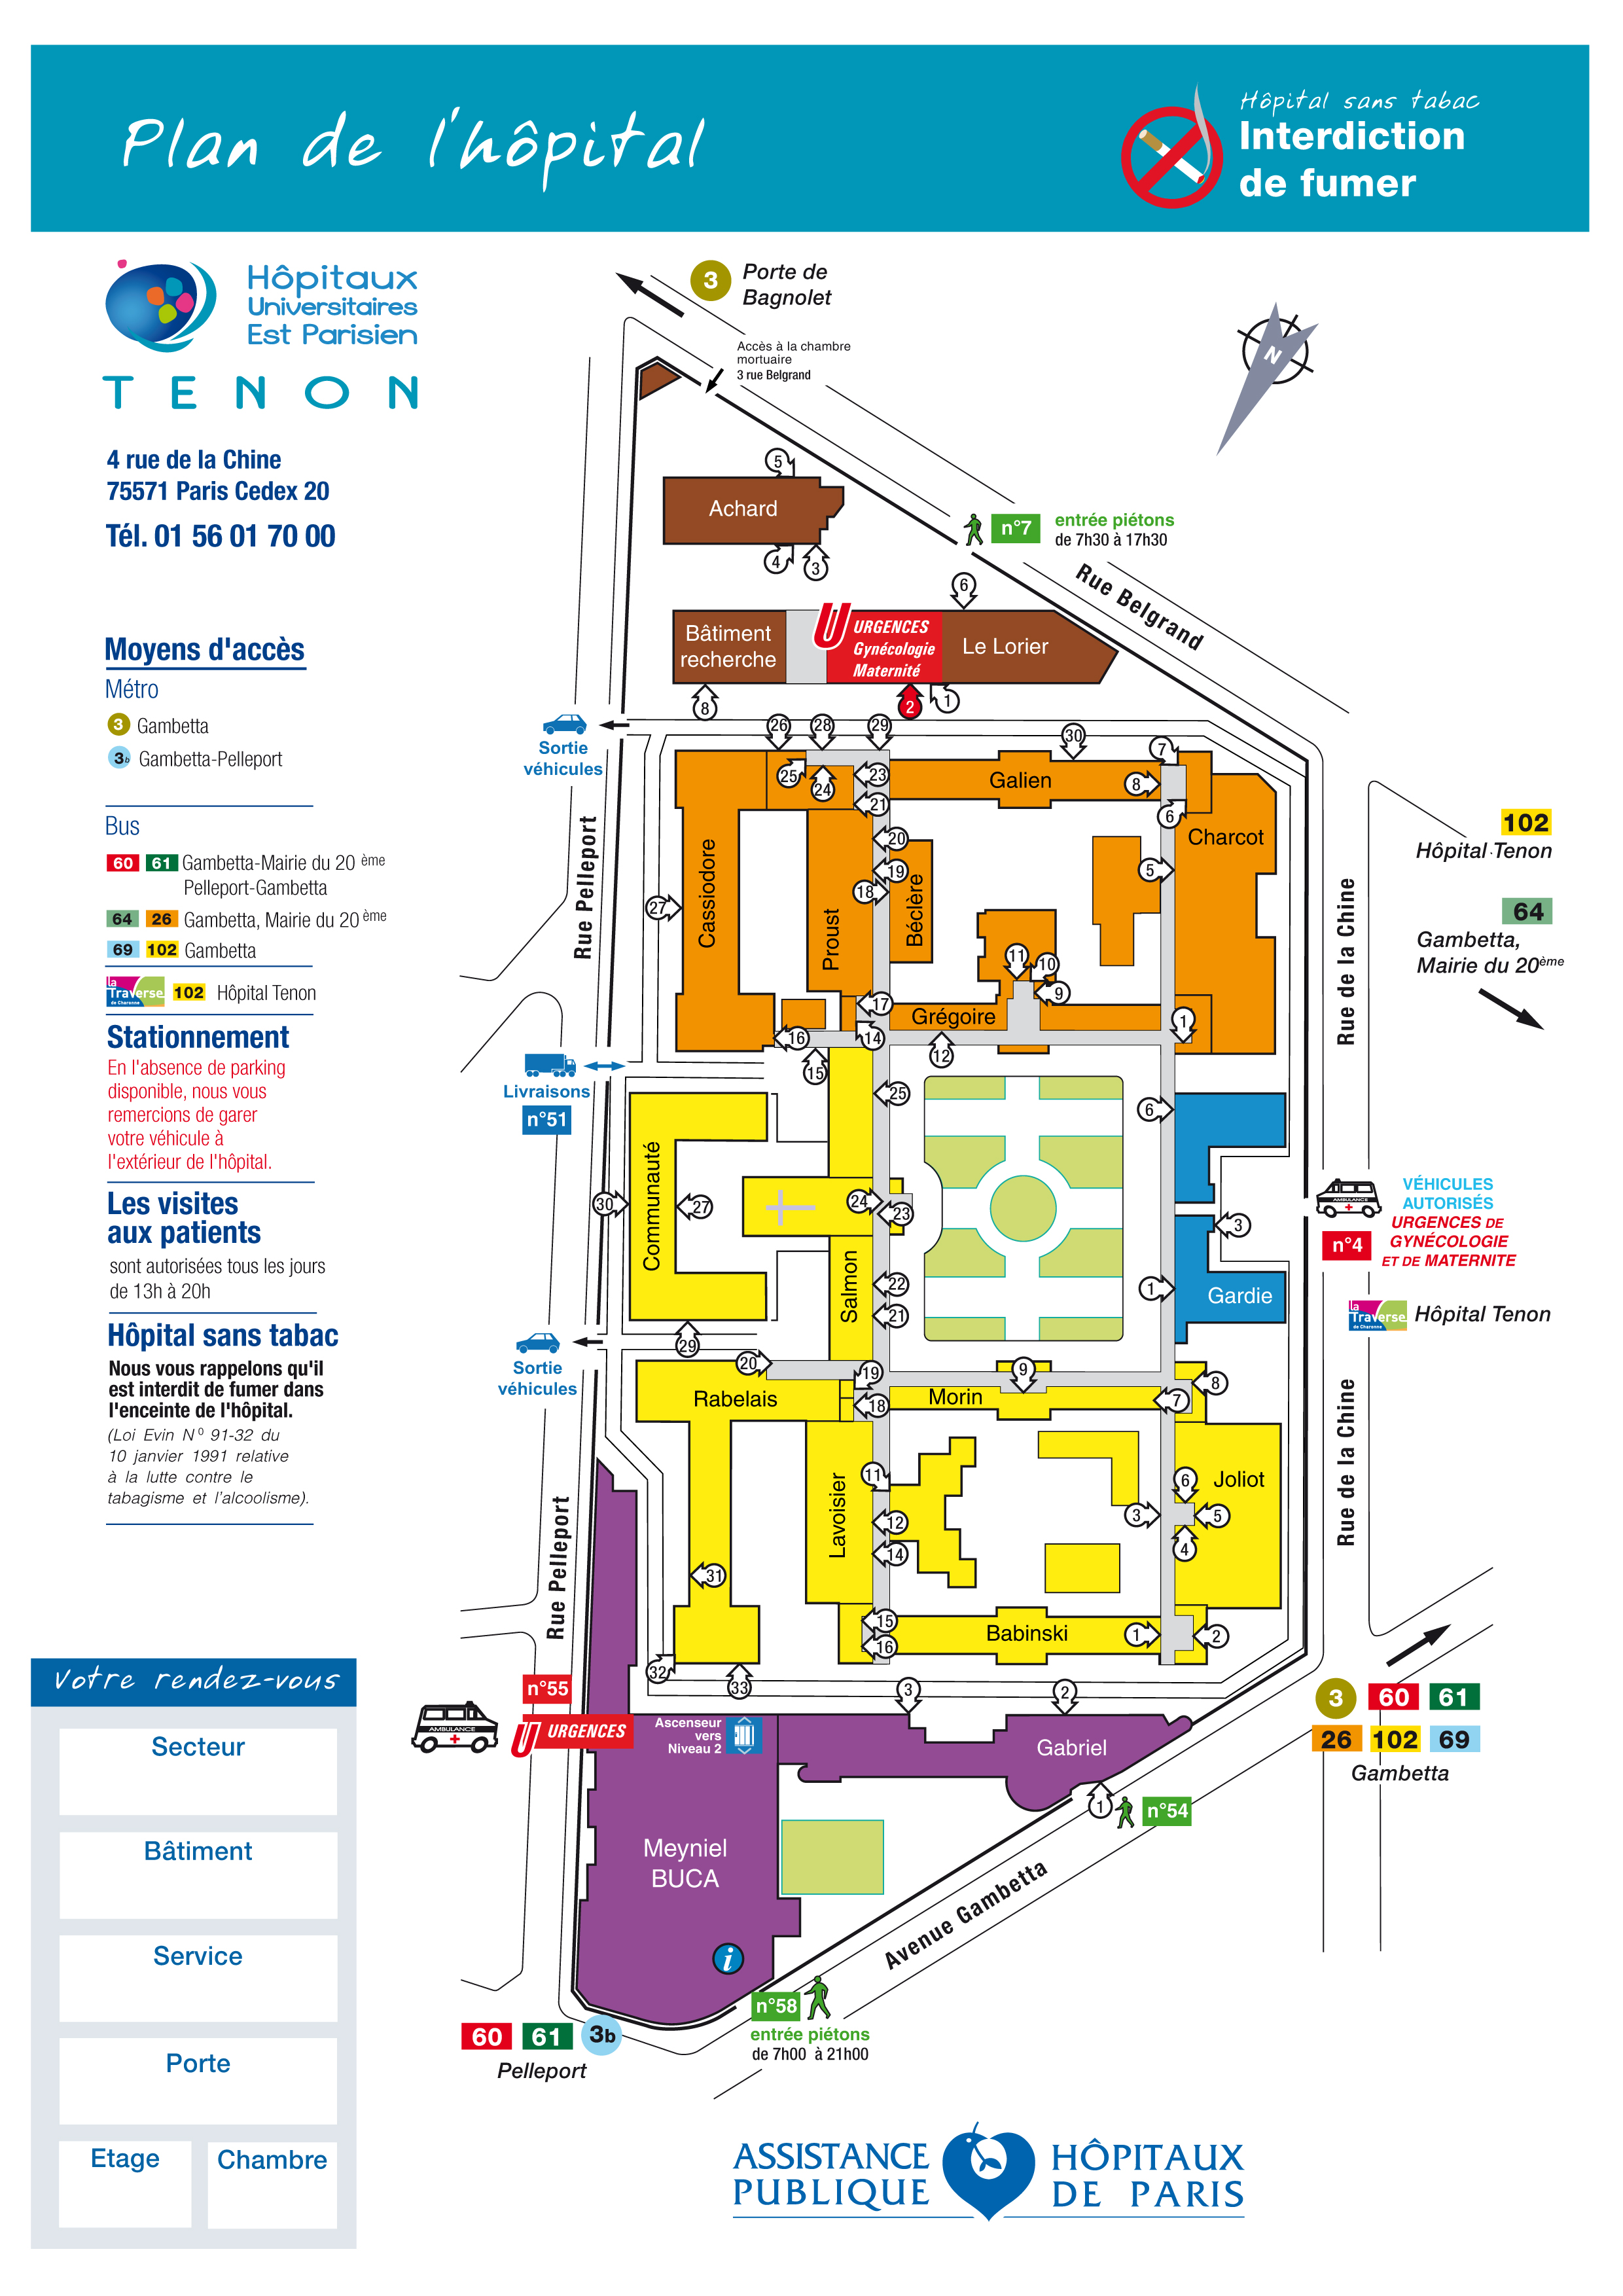 Plan de l'hôpital Tenon